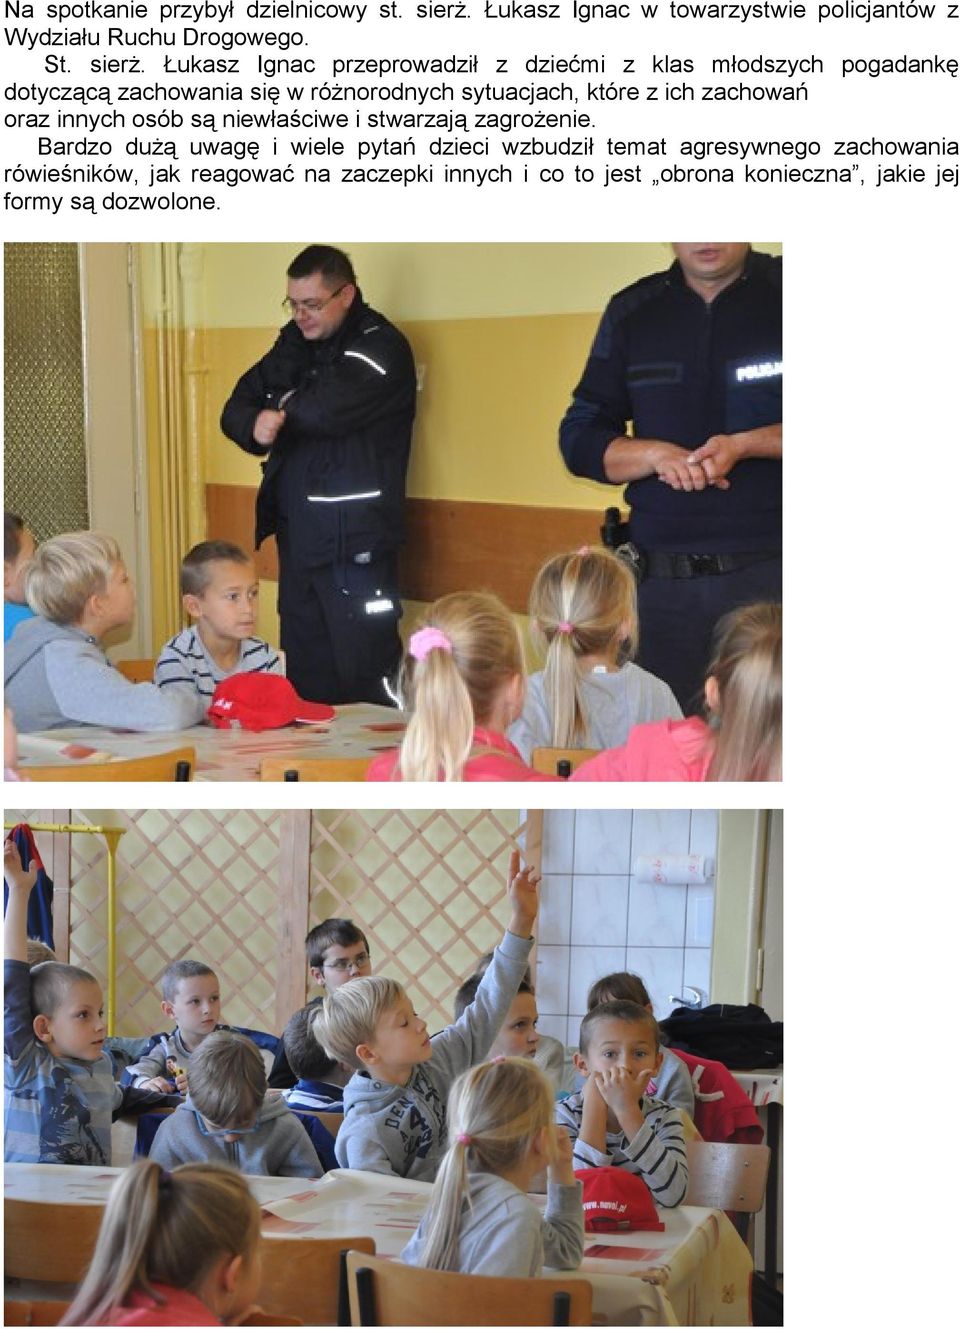 Łukasz Ignac przeprowadził z dziećmi z klas młodszych pogadankę dotyczącą zachowania się w różnorodnych sytuacjach, które z